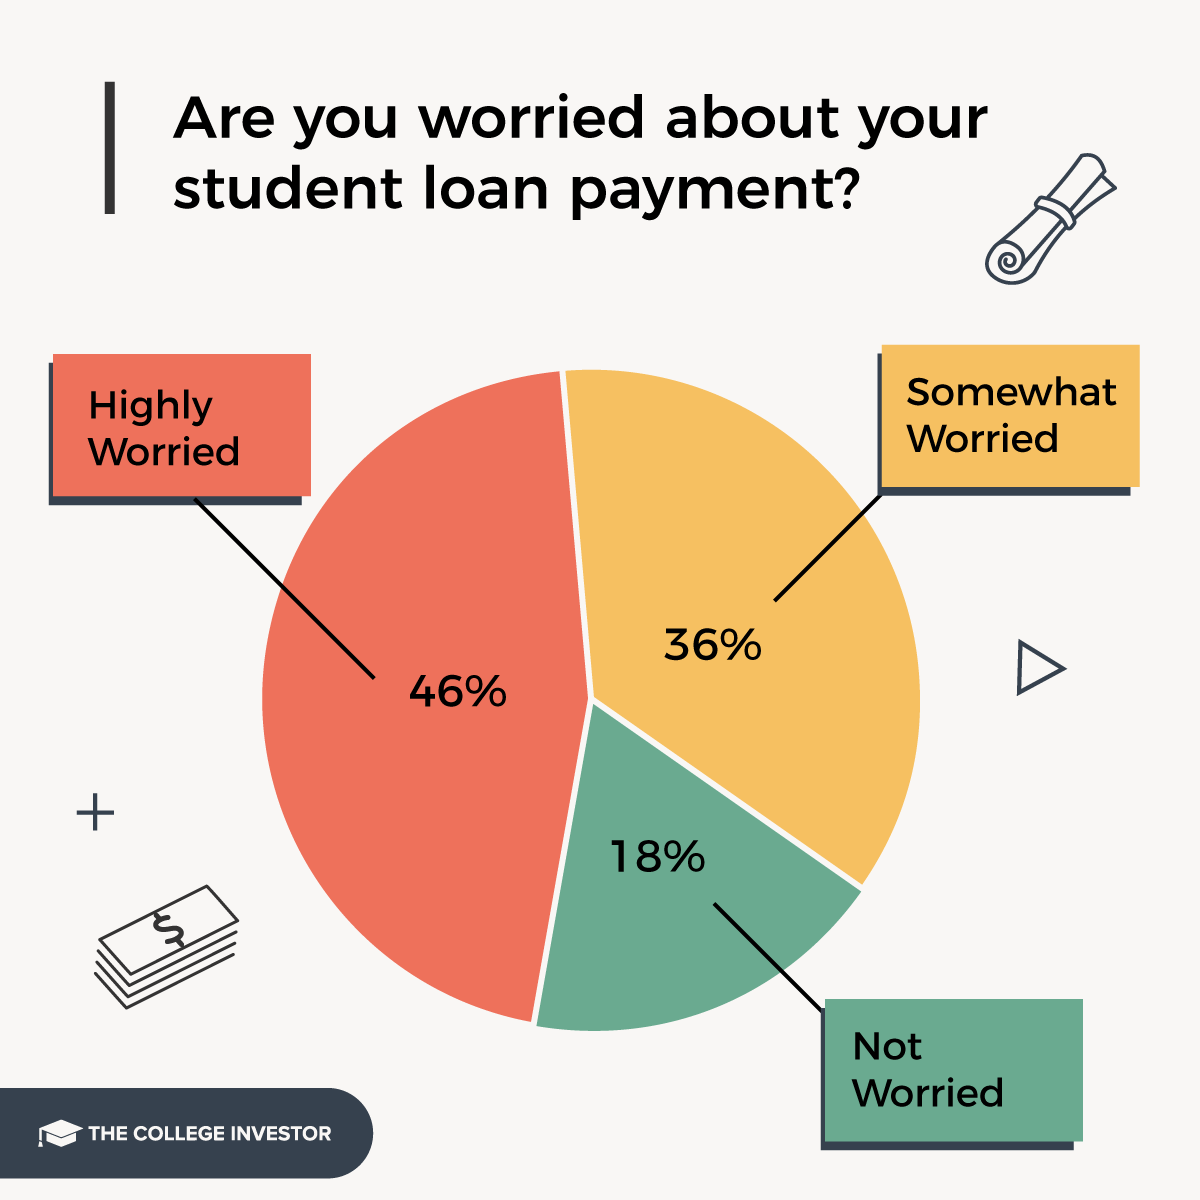 El 82% de los prestatarios están preocupados por los pagos de sus préstamos.